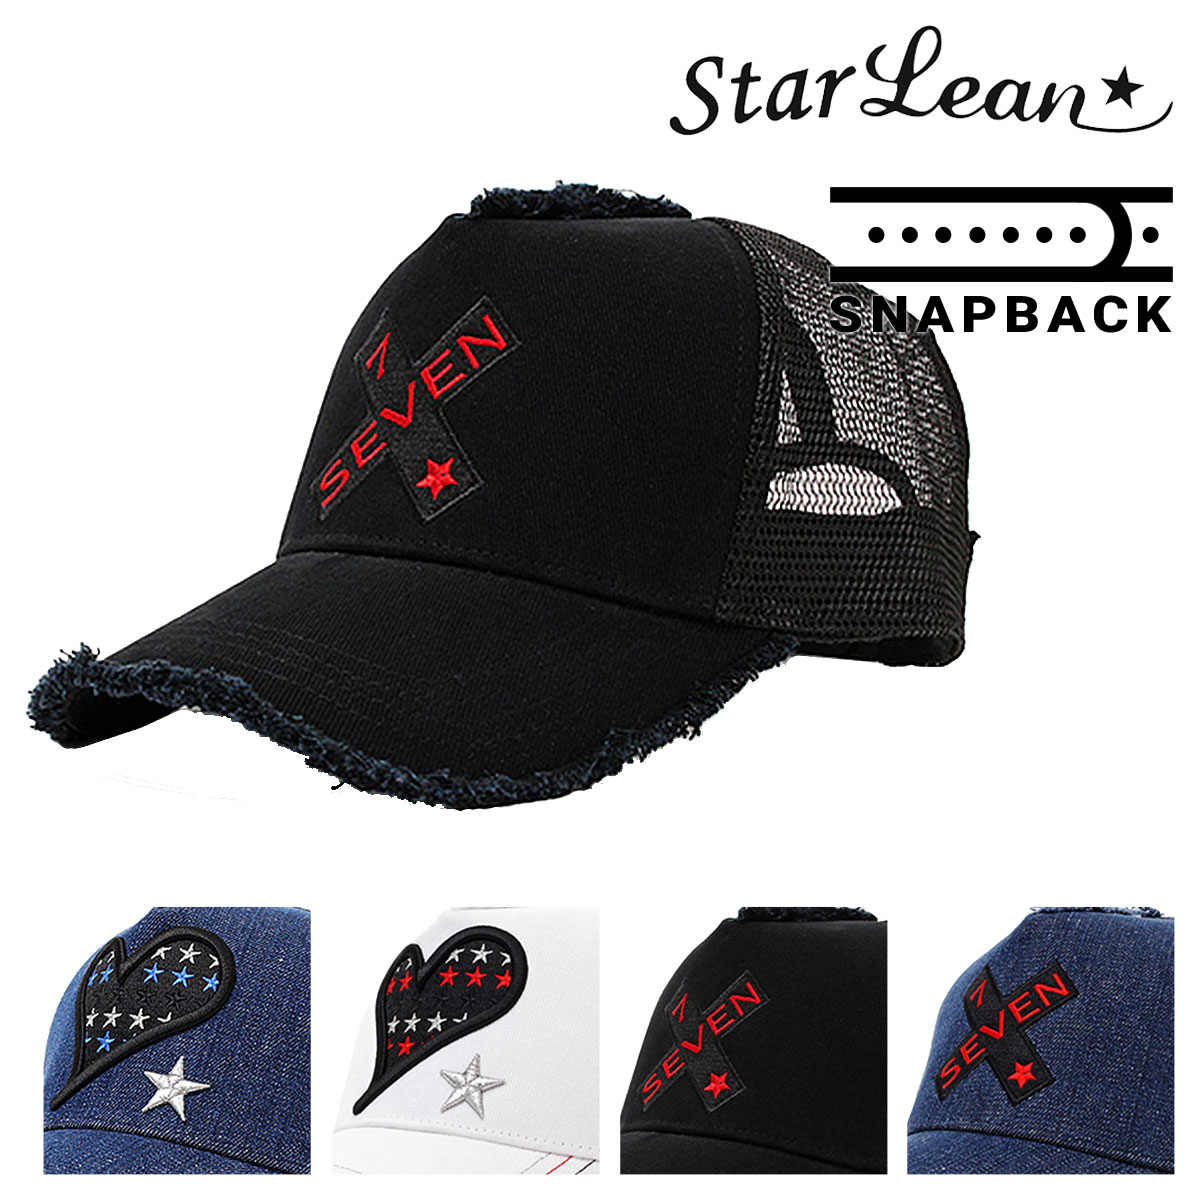 メンズ メッシュキャップ スターリアン レディース 帽子 Po10 Bef 東京デリカオンライン店送料無料 Starlean レディース メンズ帽子 サイズ調節可能 Starlean キャップ